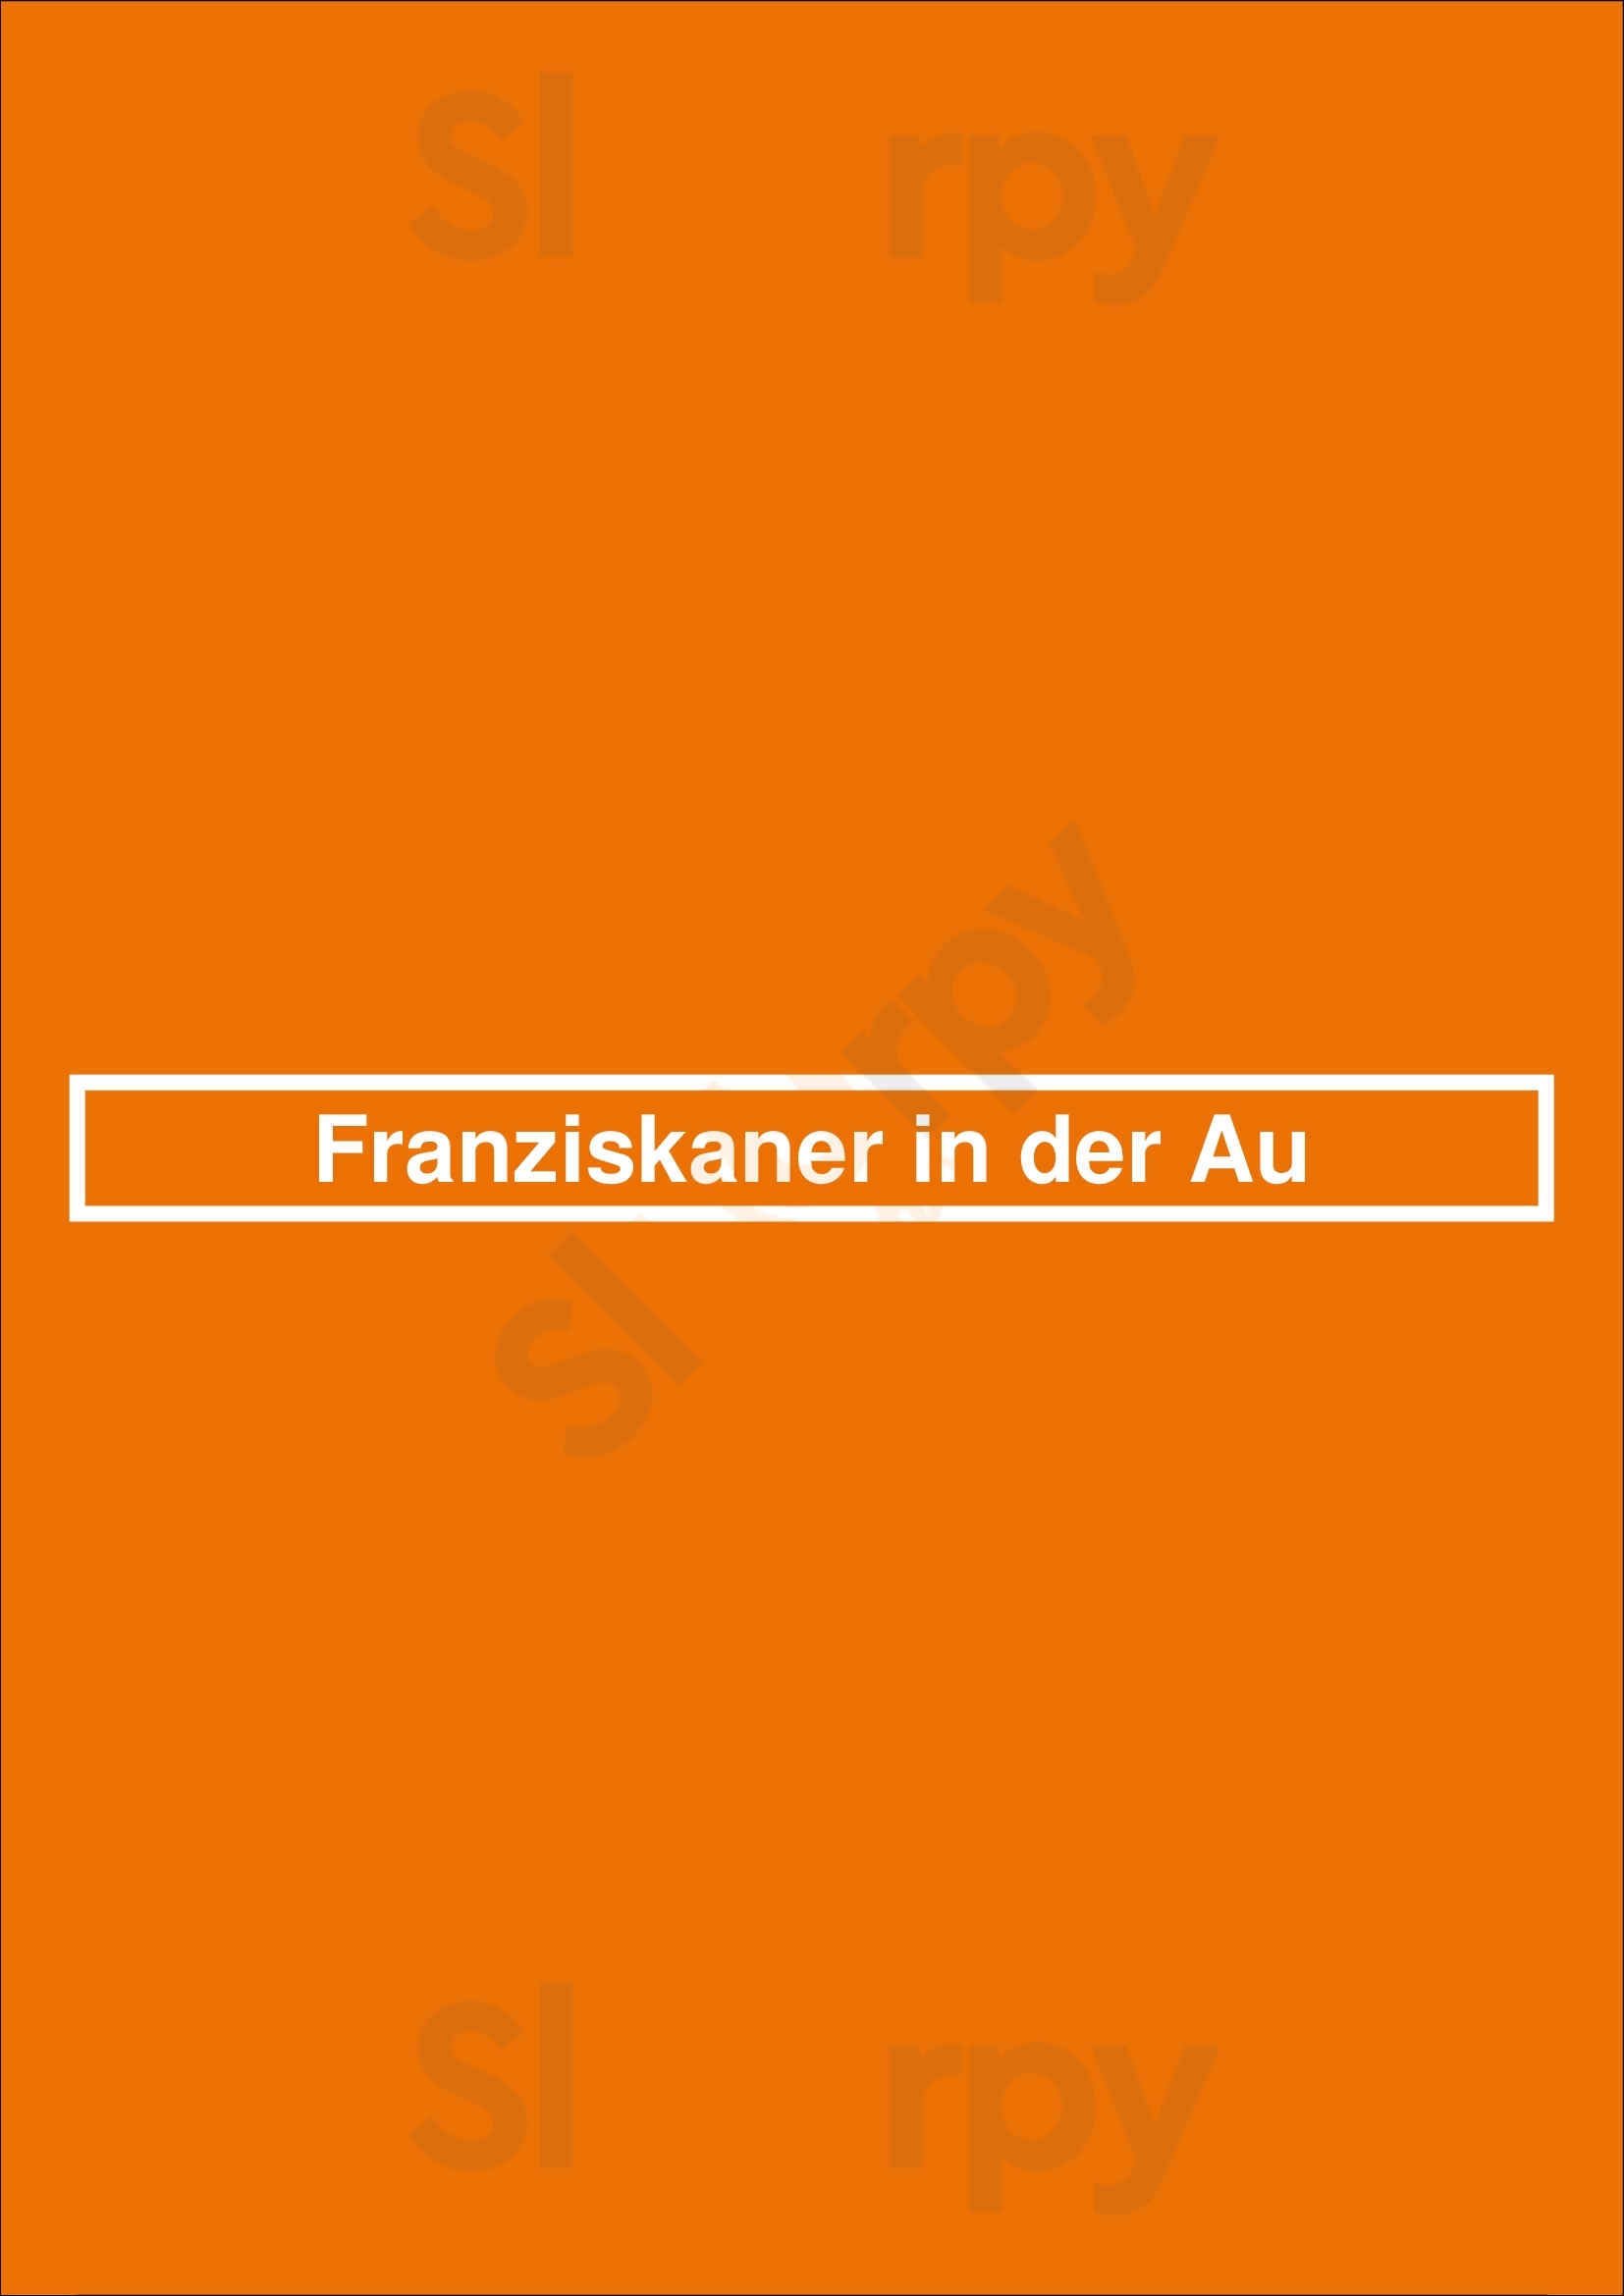 Franziskaner In Der Au München Menu - 1